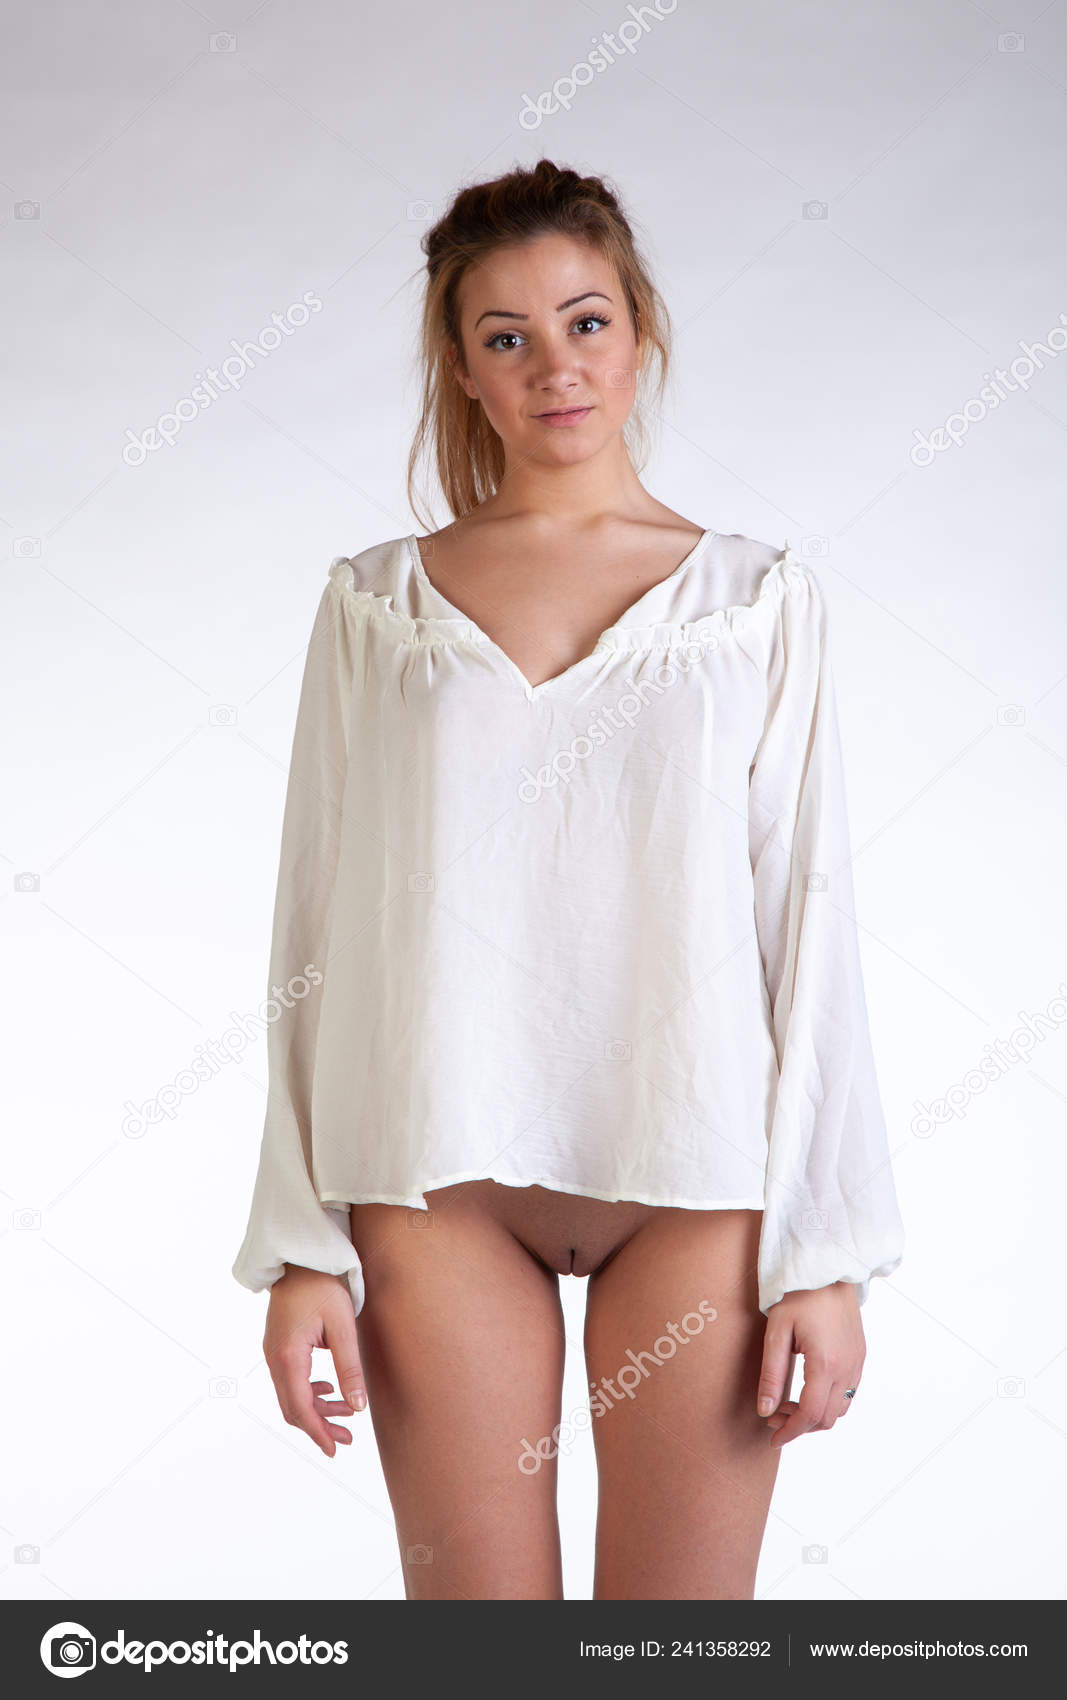 https://st4n.depositphotos.com/10086424/24135/i/1600/depositphotos_241358292-stock-photo-young-beautiful-girl-posing-nude.jpg